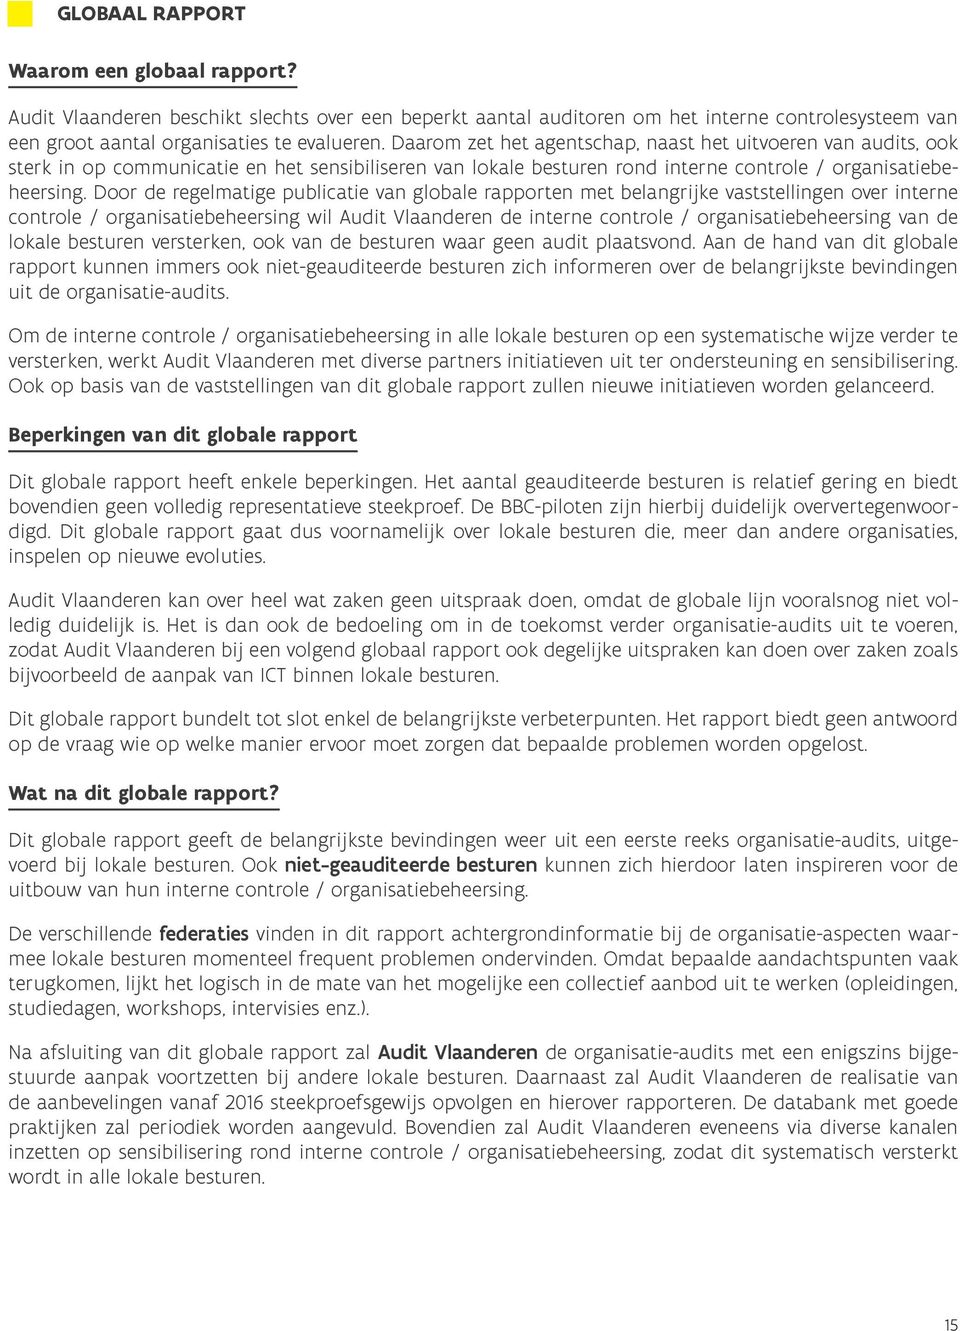 Door de regelmatige publicatie van globale rapporten met belangrijke vaststellingen over interne controle / organisatiebeheersing wil Audit Vlaanderen de interne controle / organisatiebeheersing van